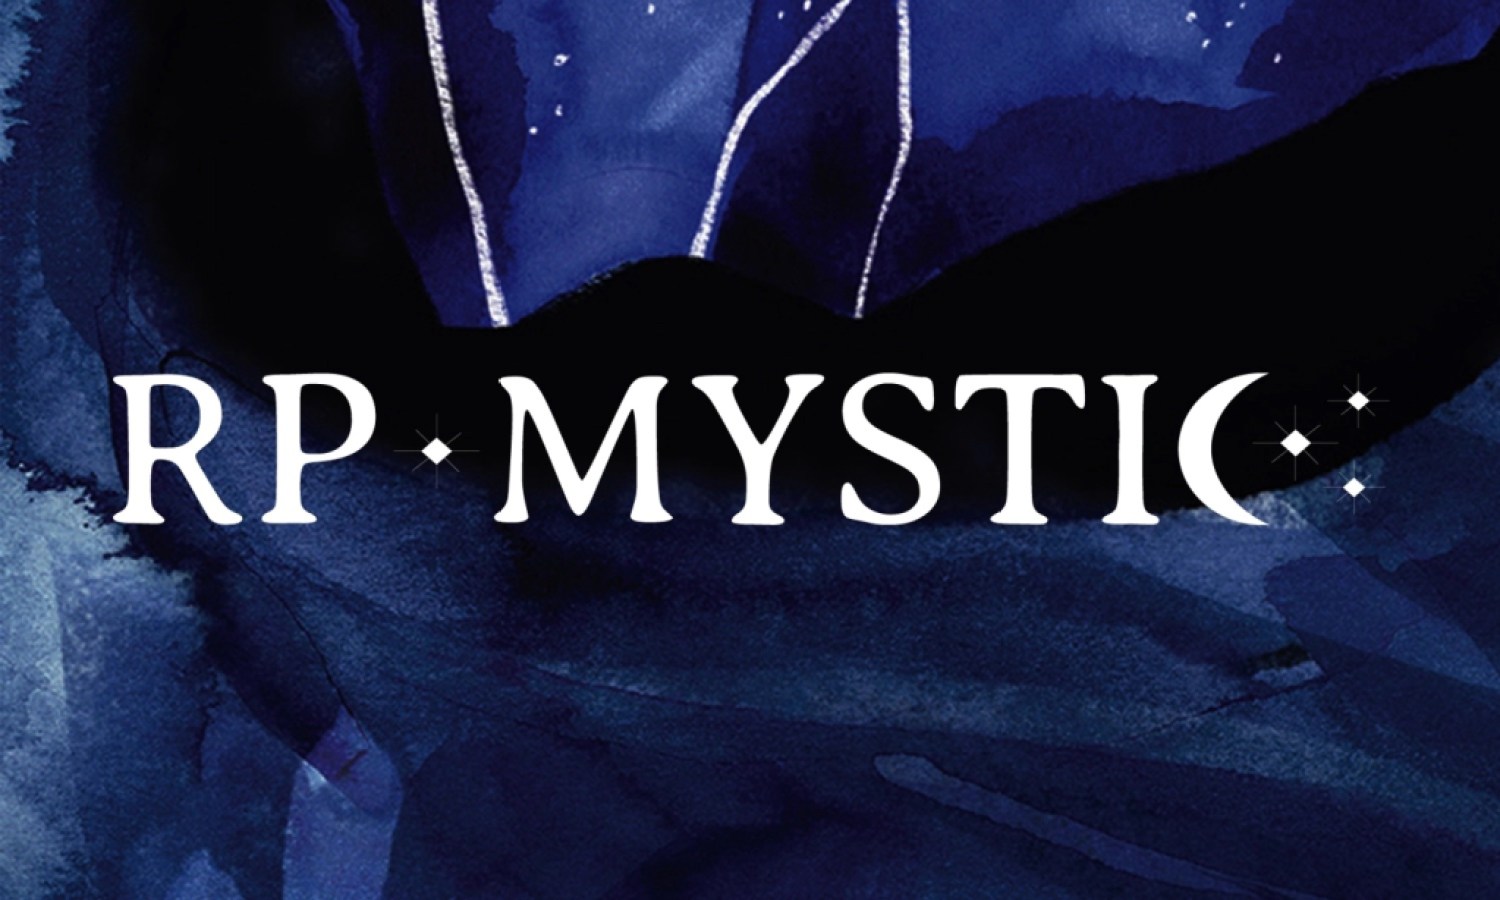 Designed graphic reading "RP Mystic"